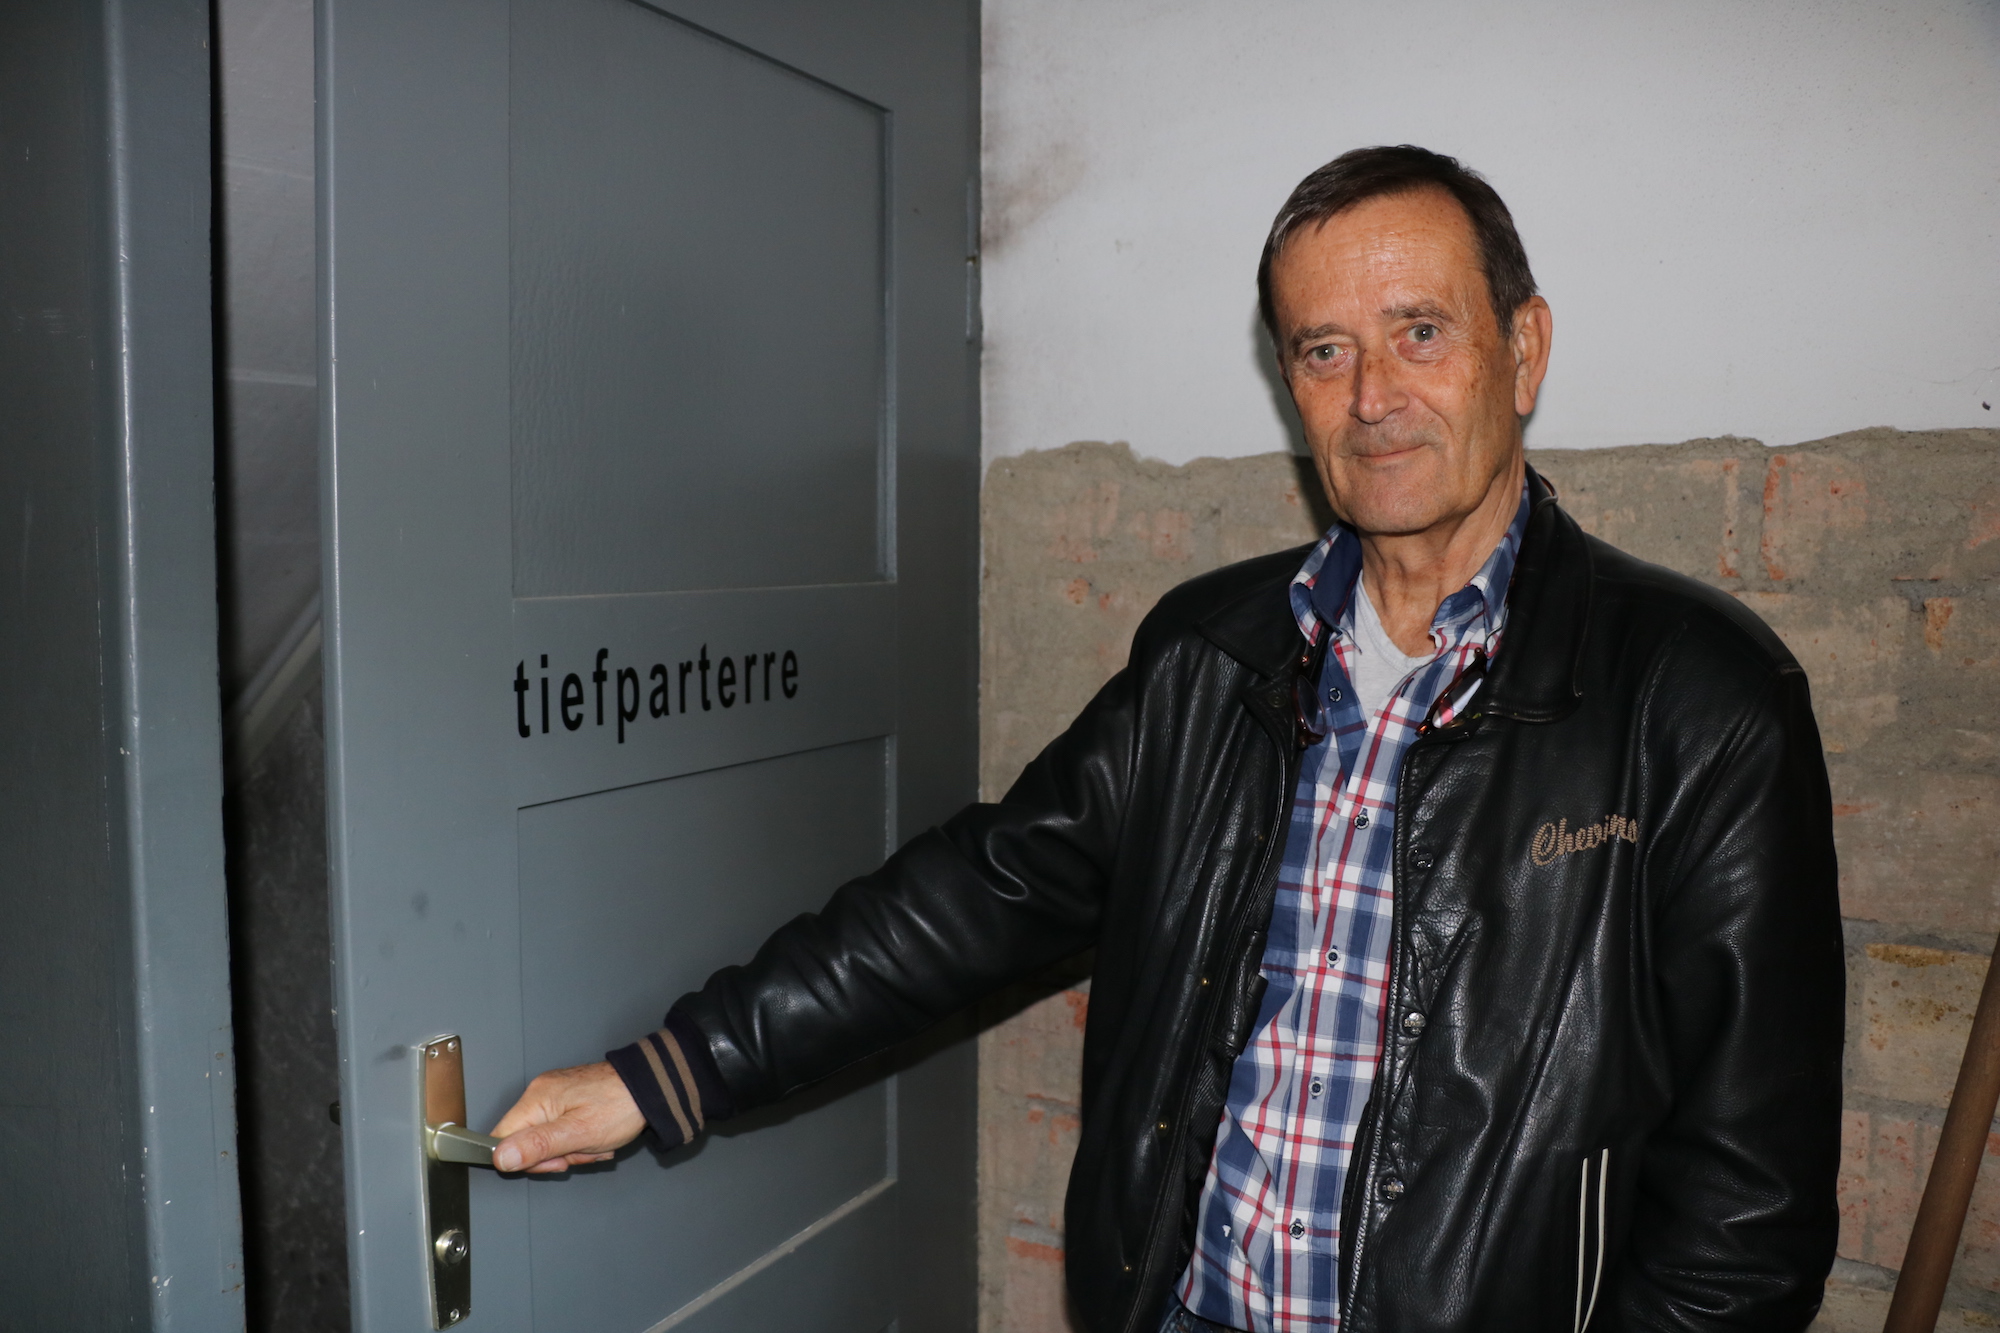 Willkommen zur Ausstellung im Tiefparterre Kreuzlingen: Kurator Richard Tisserand freut sich auf die Besucher.